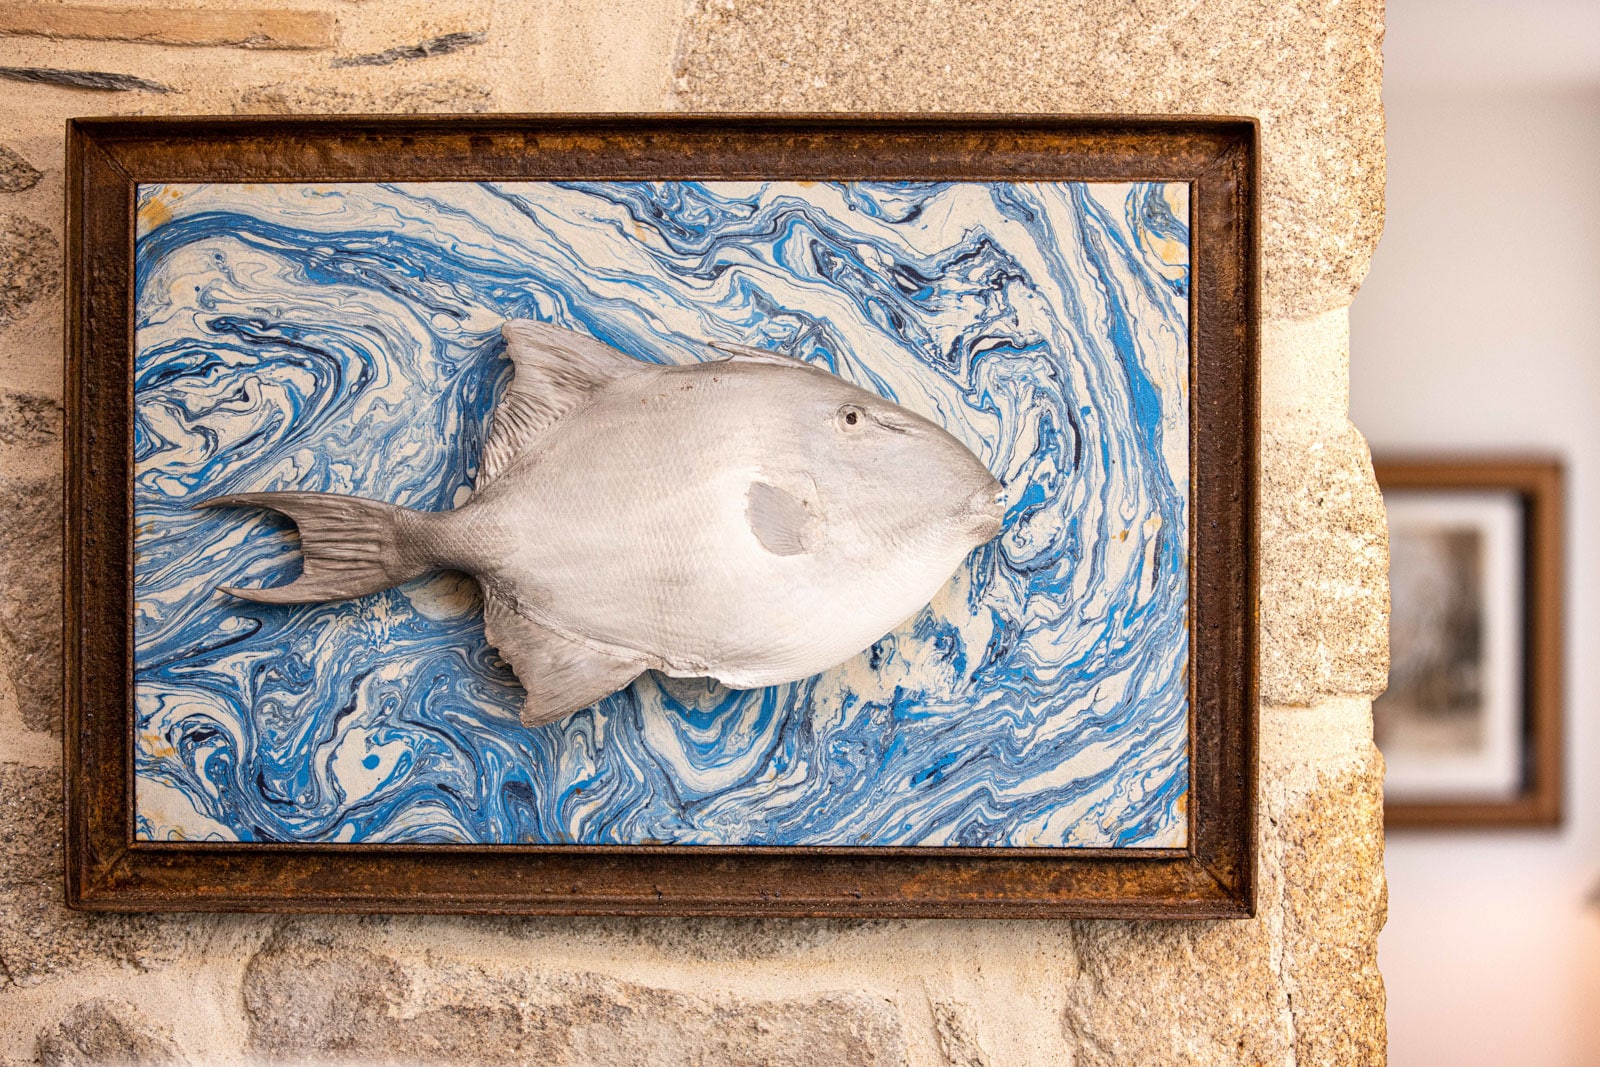 Tableau d'un poisson en céramique bleu